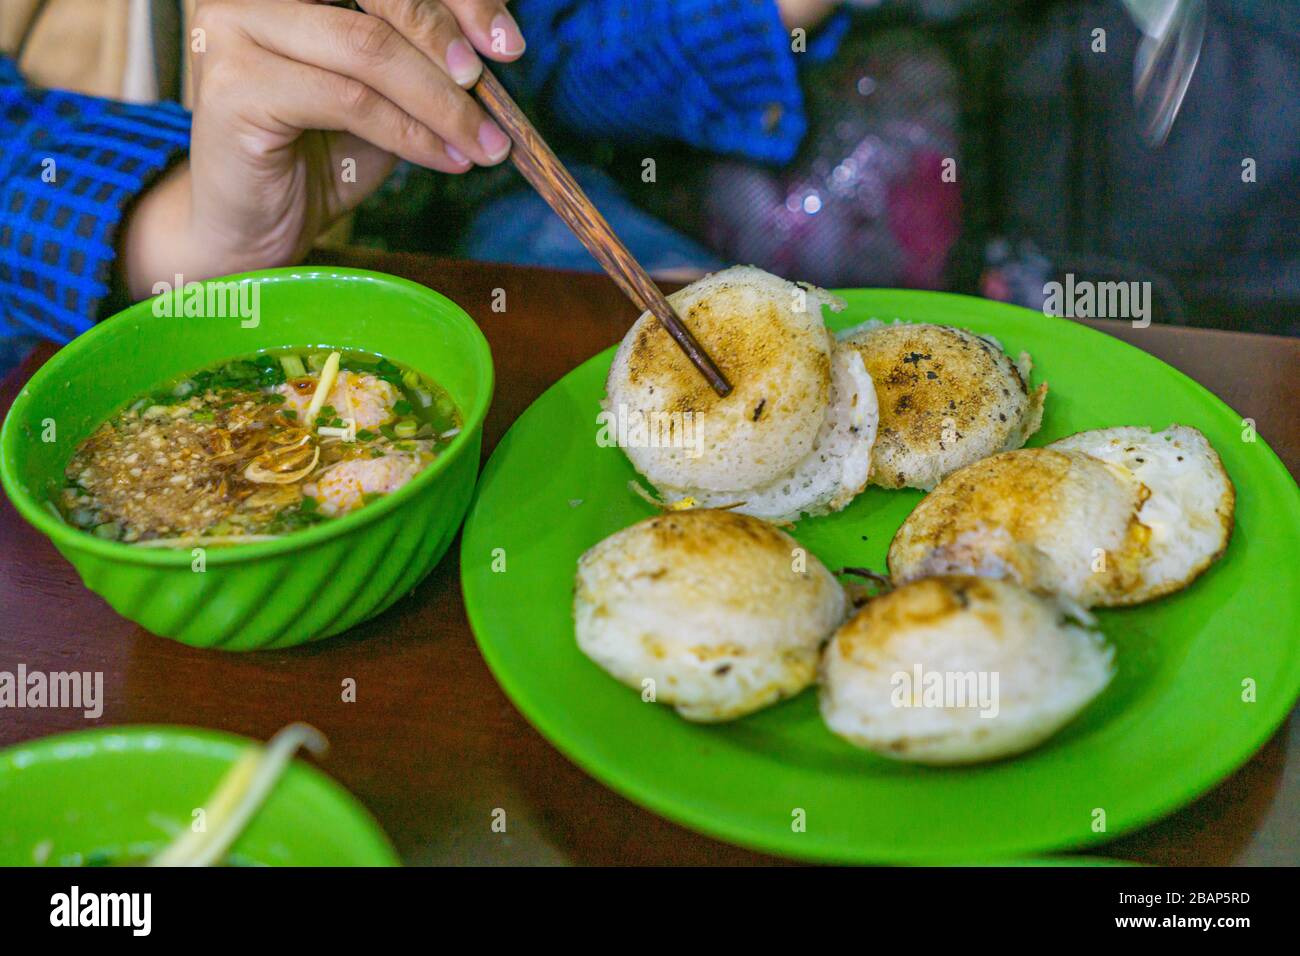 Frau händig mit Essstäbchen beim Essen der vietnamesischen Küche - Banh  Dose Stockfotografie - Alamy